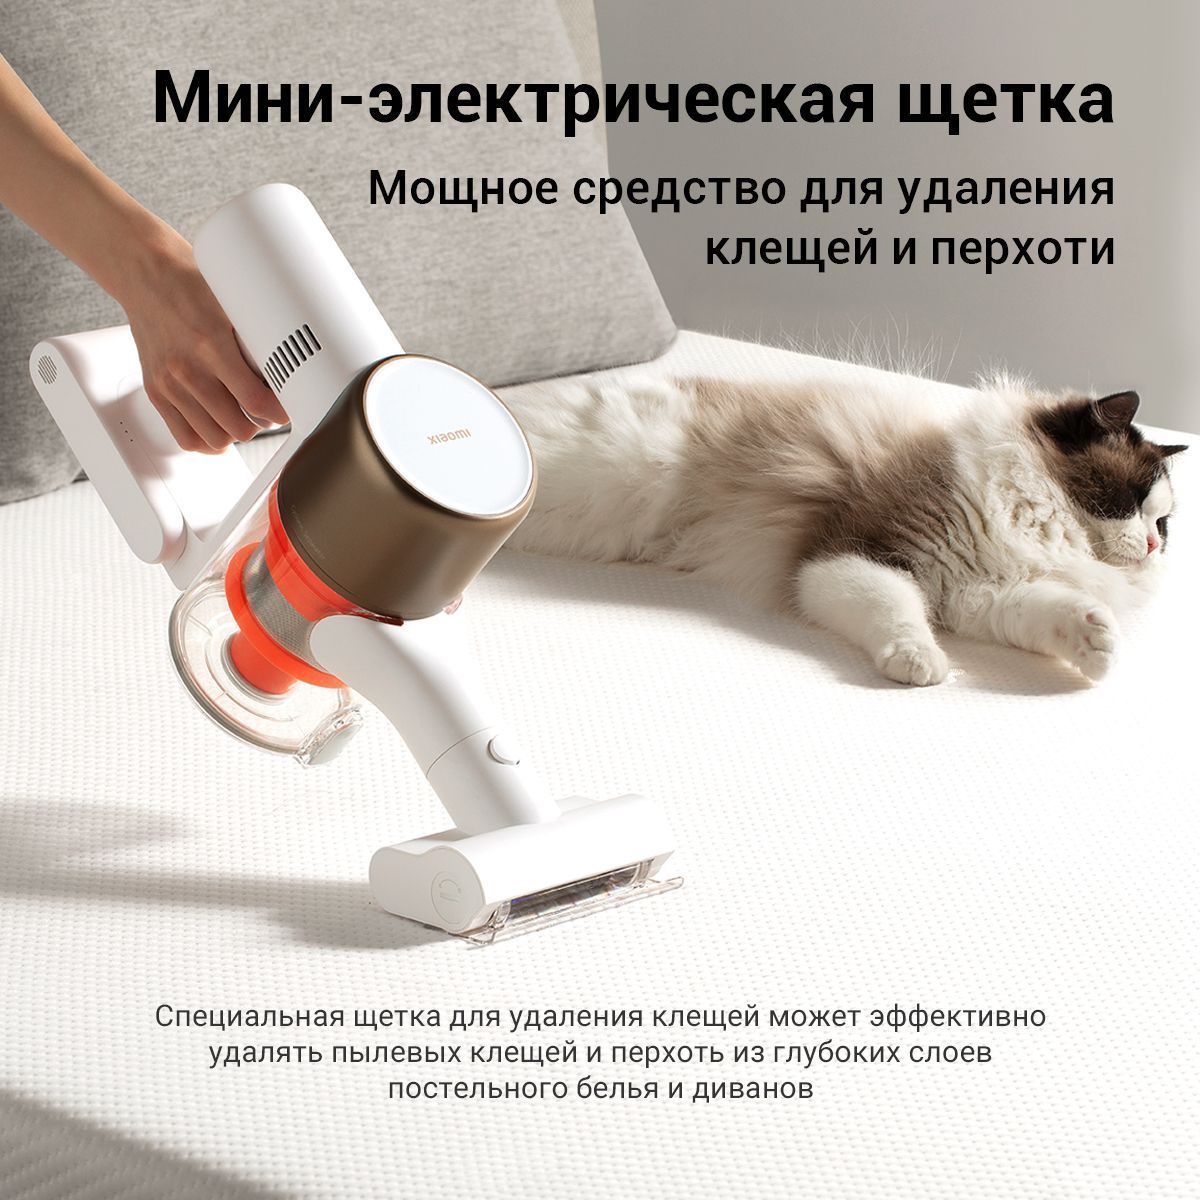 Пылесос Xiaomi Vacuum Cleaner G10 Plus EU - купить с доставкой по выгодным  ценам в интернет-магазине OZON (1067906638)